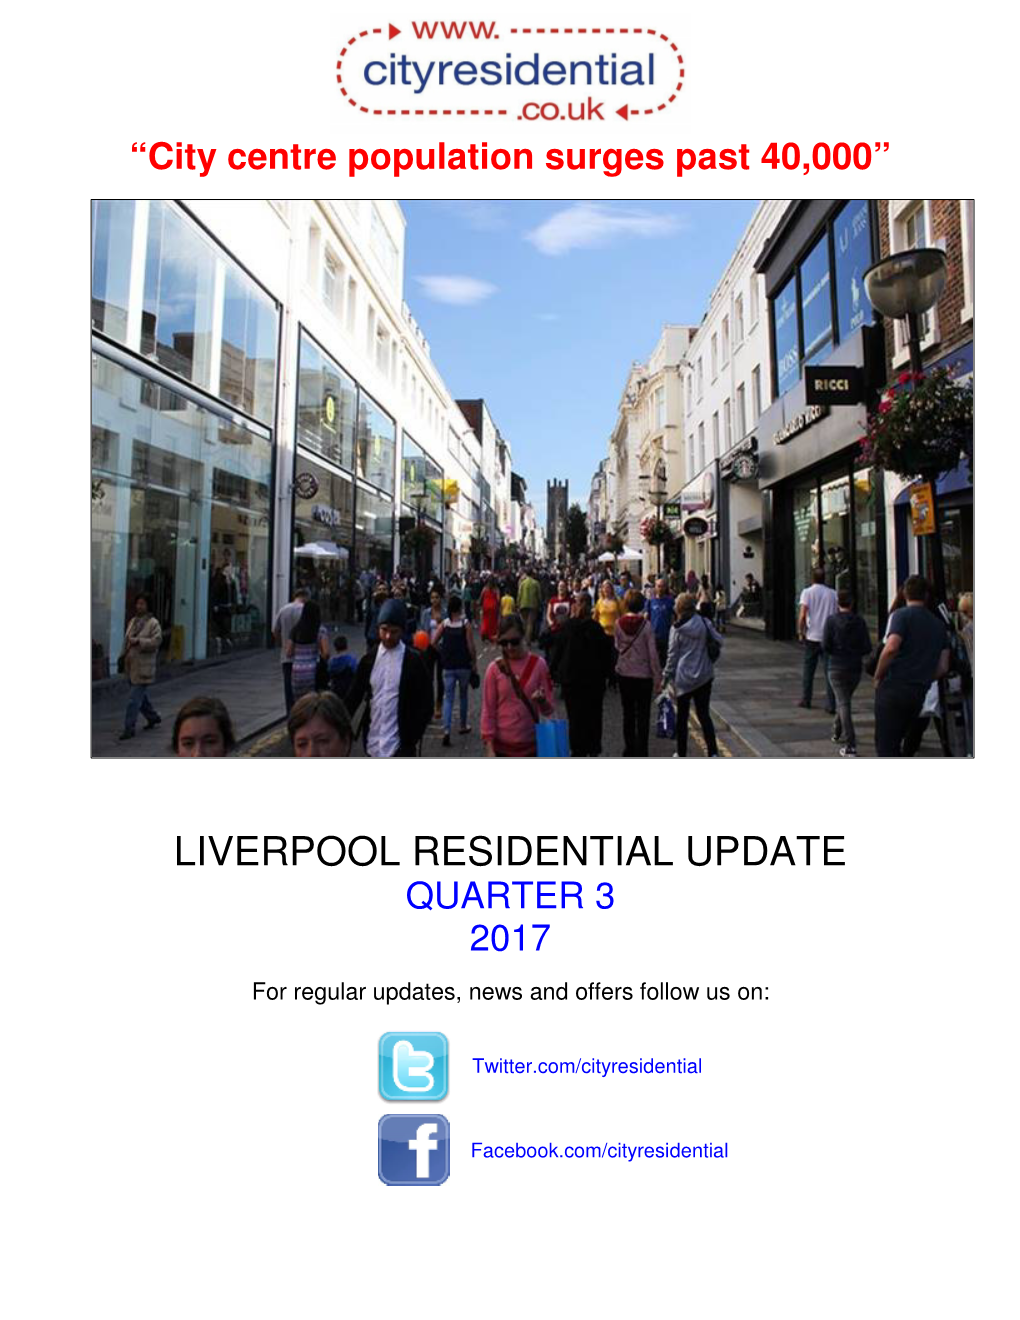 City Centre Population Surges Past 40000